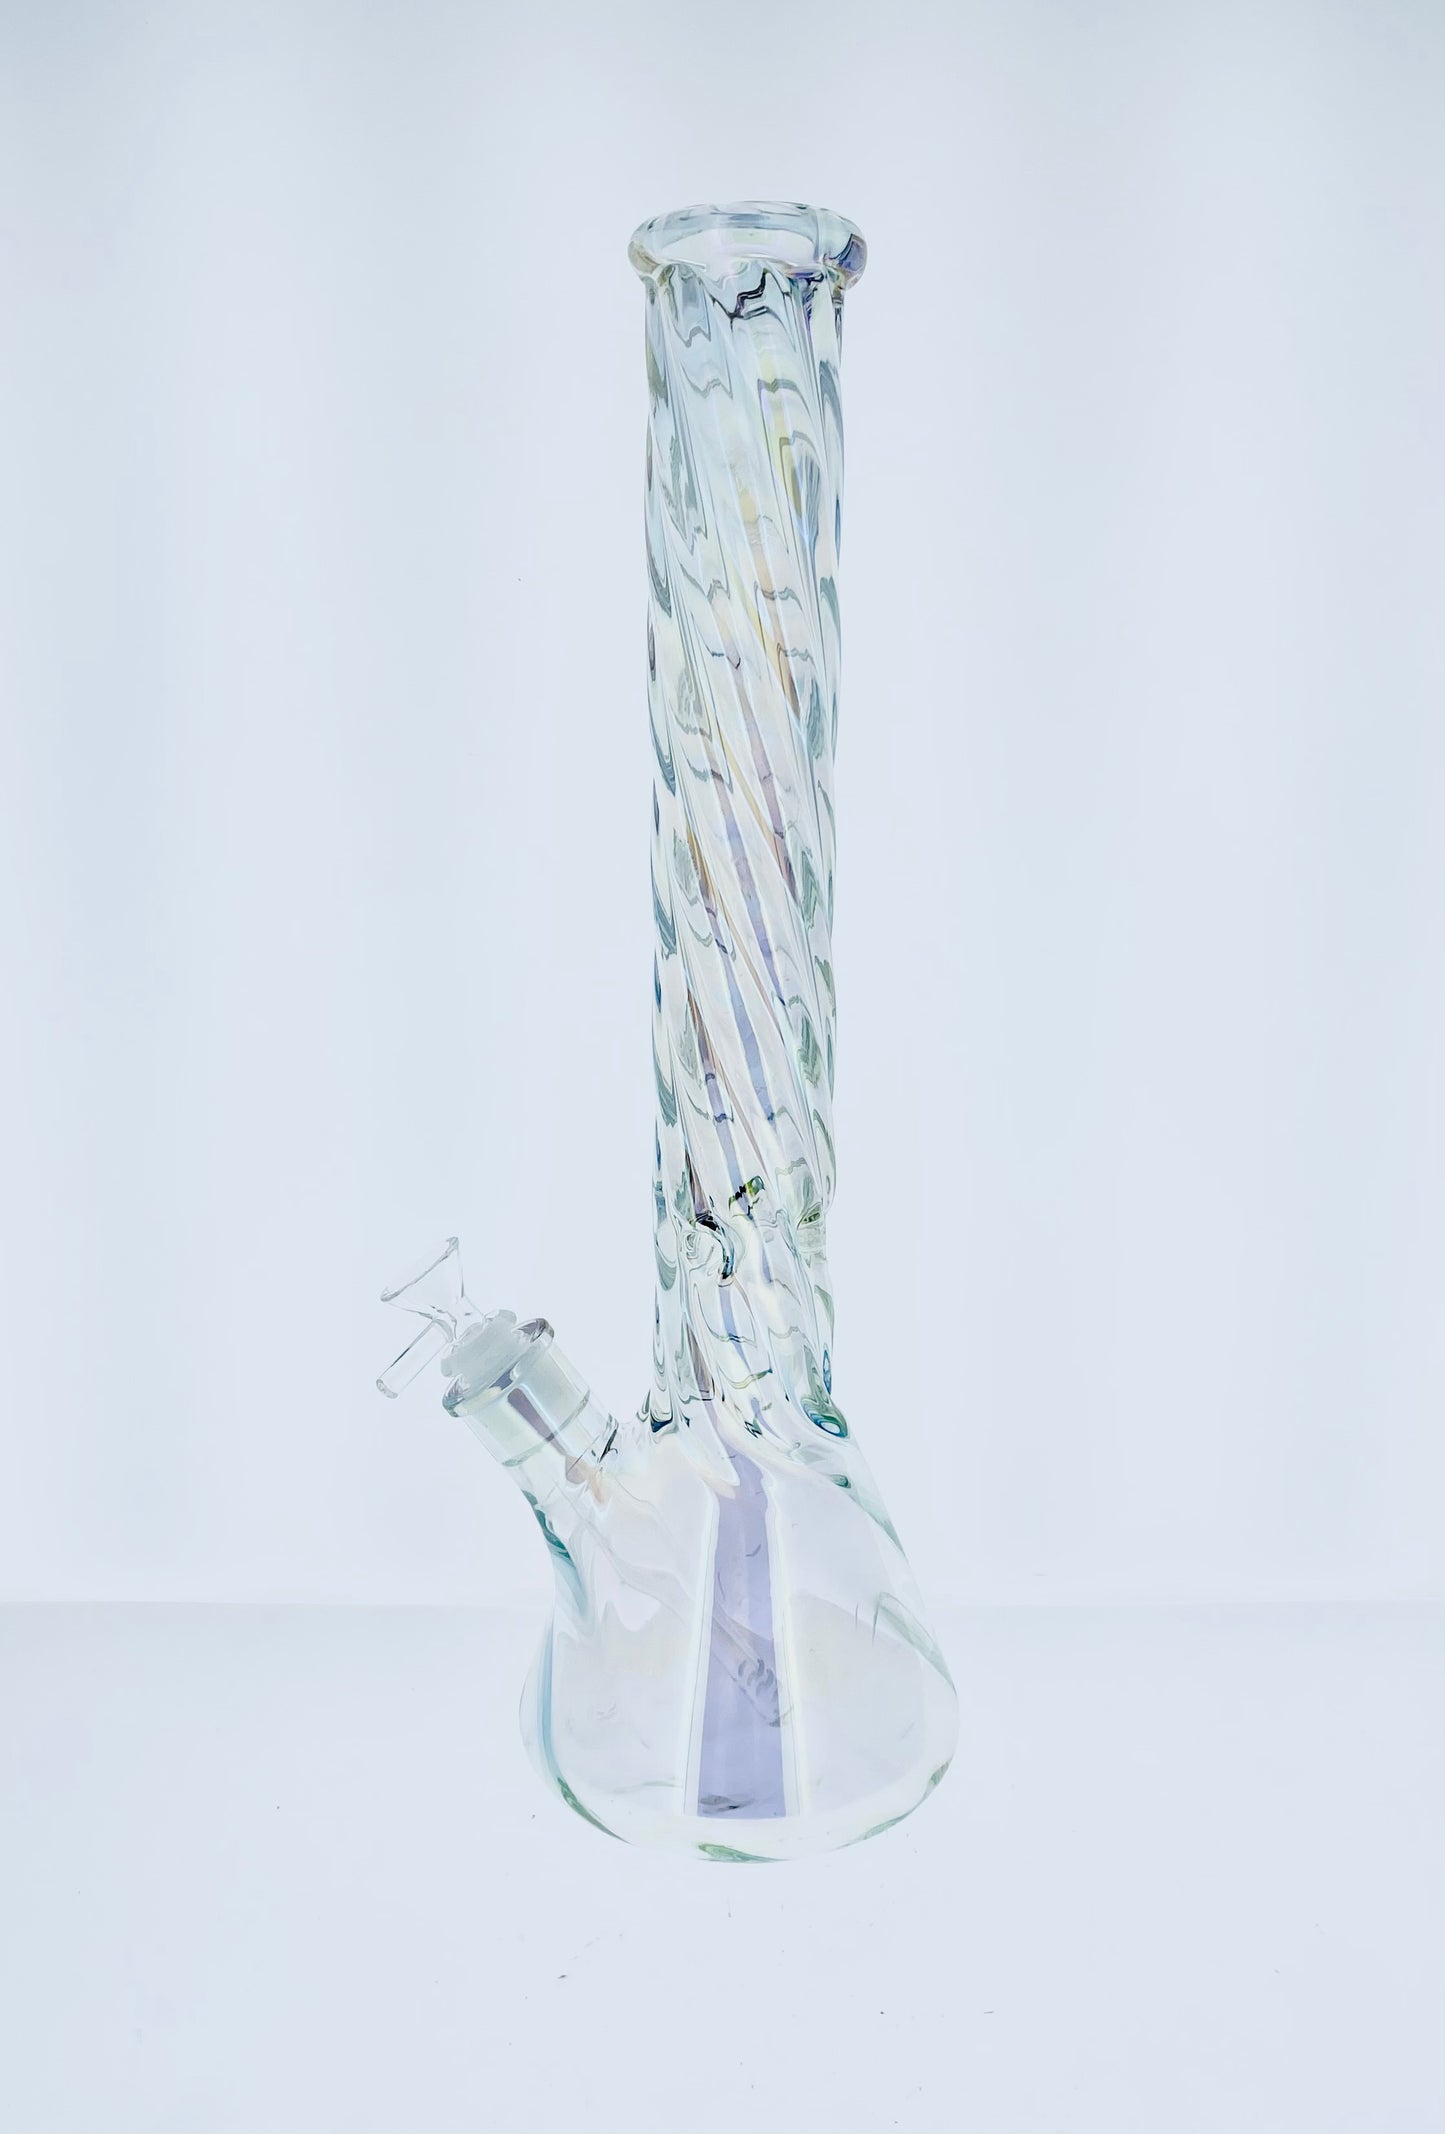 16" Holographic Twisted Neck Beaker